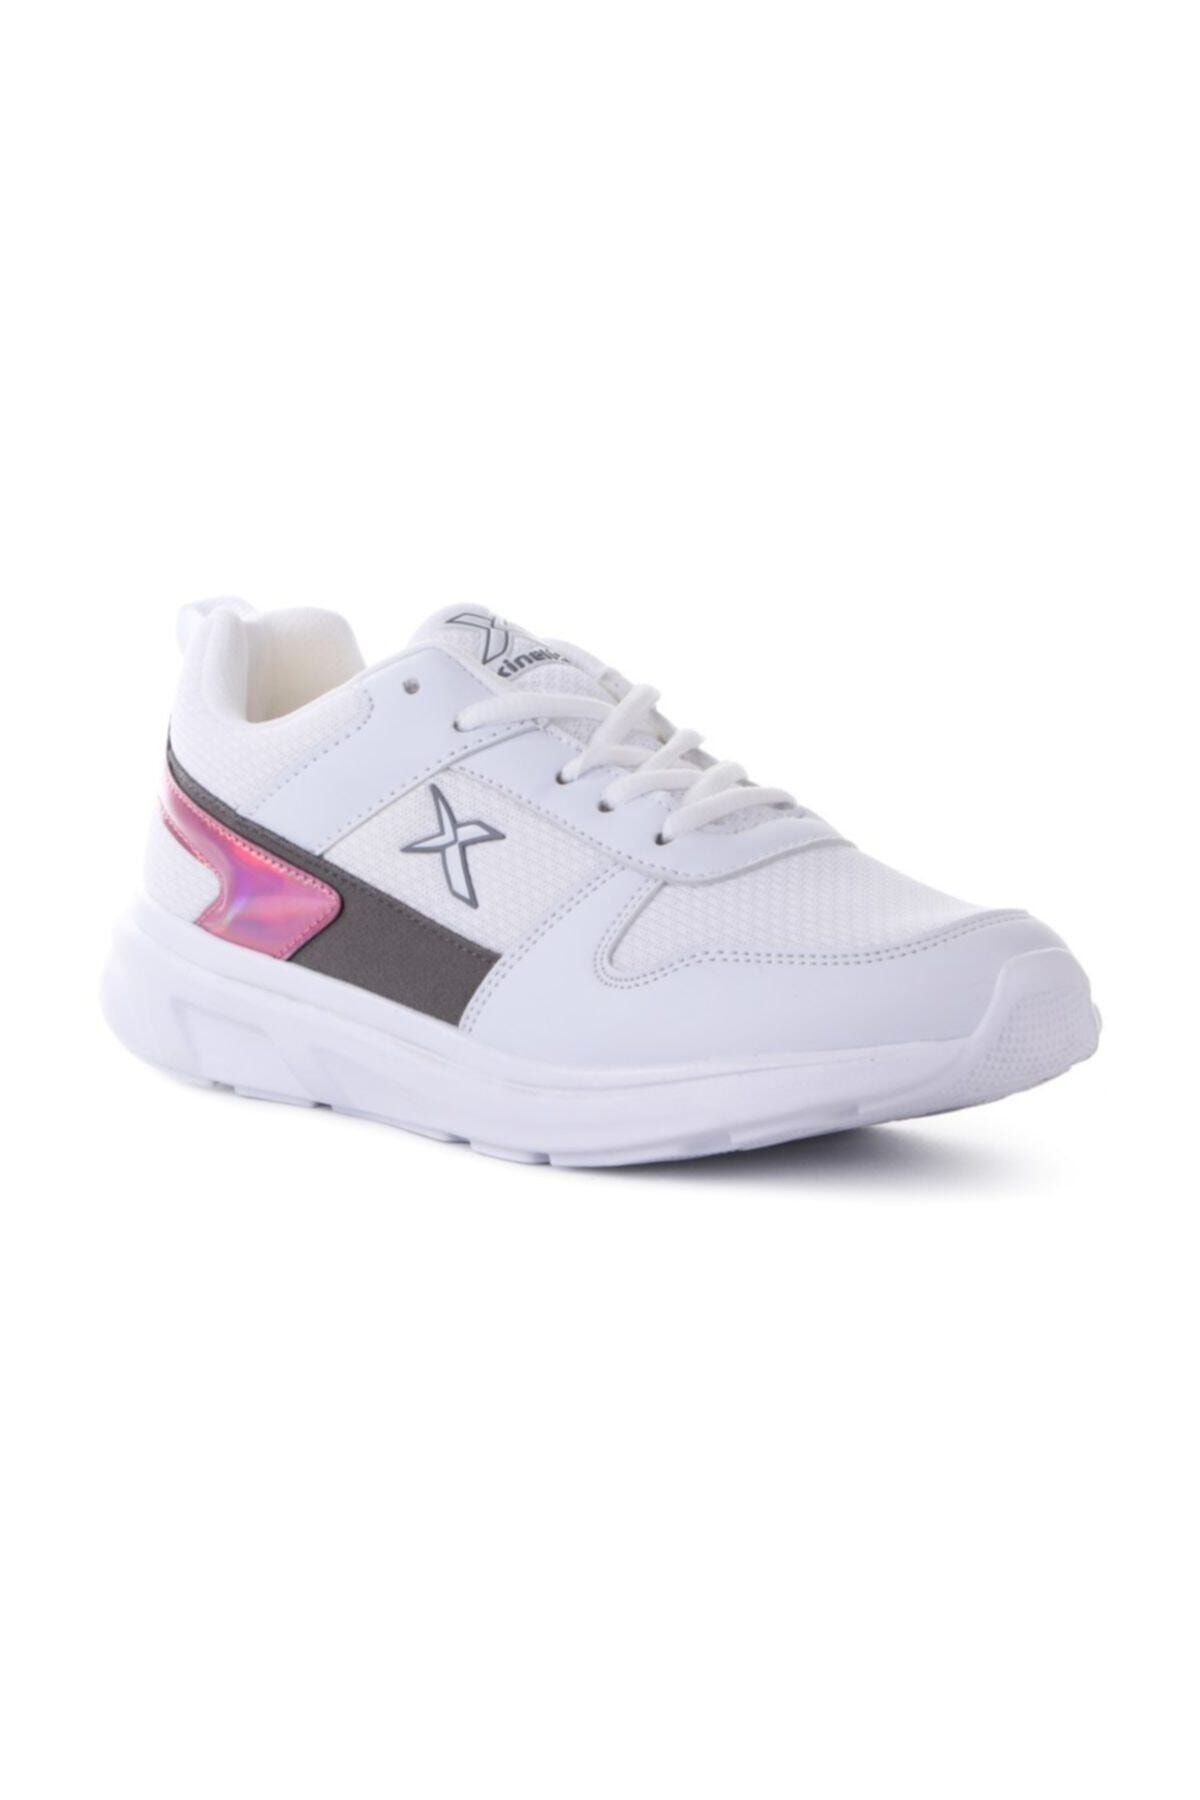 Kinetix VILNUS W Beyaz Kadın Sneaker Ayakkabı 100484612